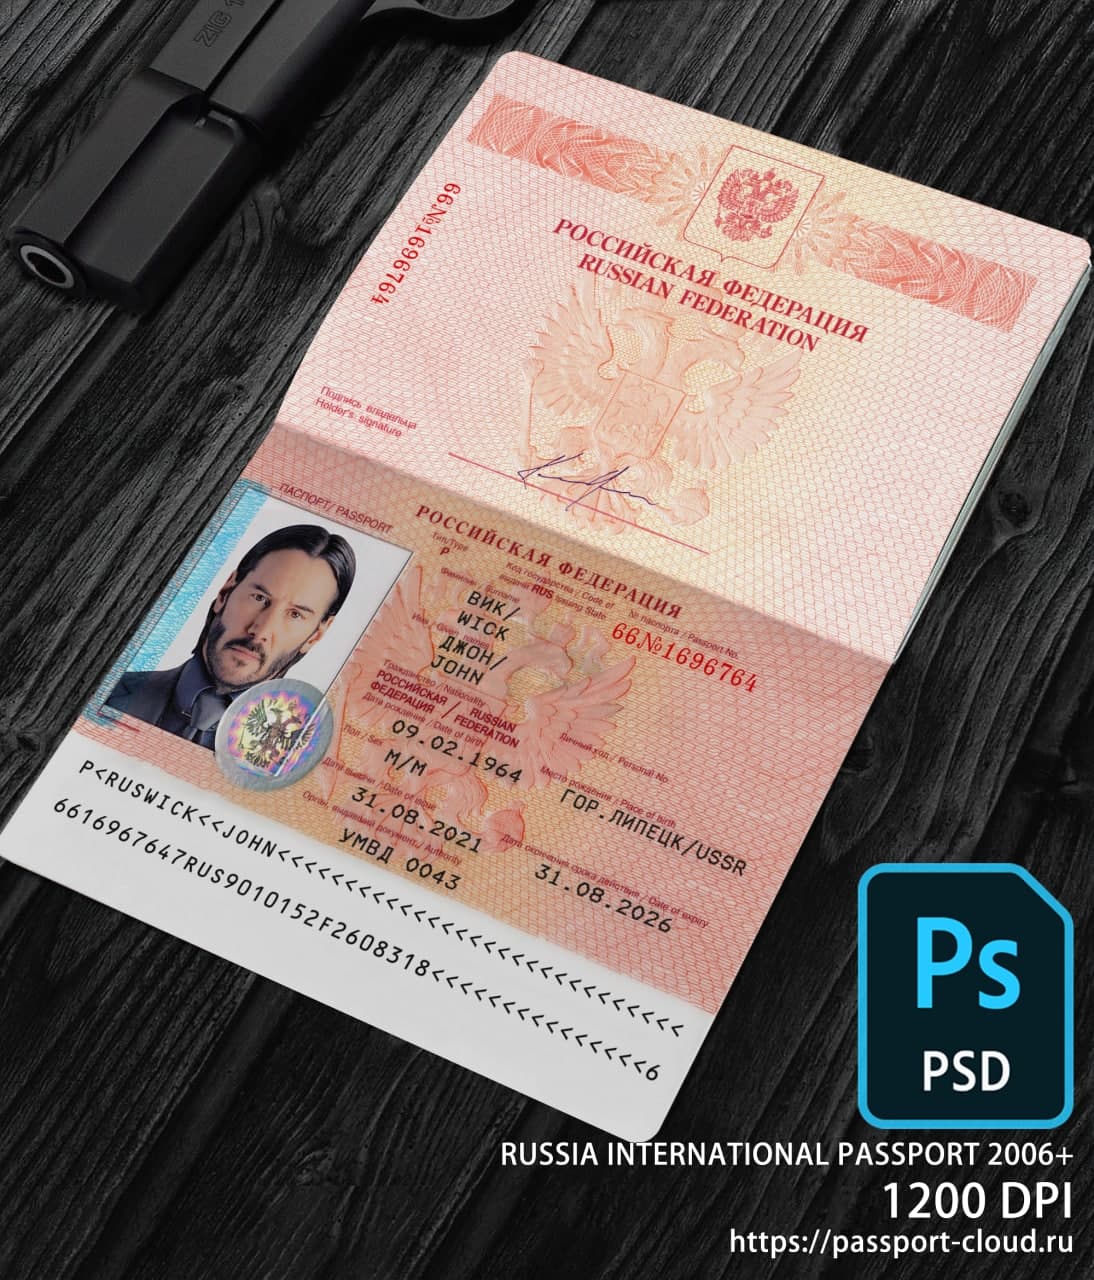 Russia International Passport 2006+ PSD1